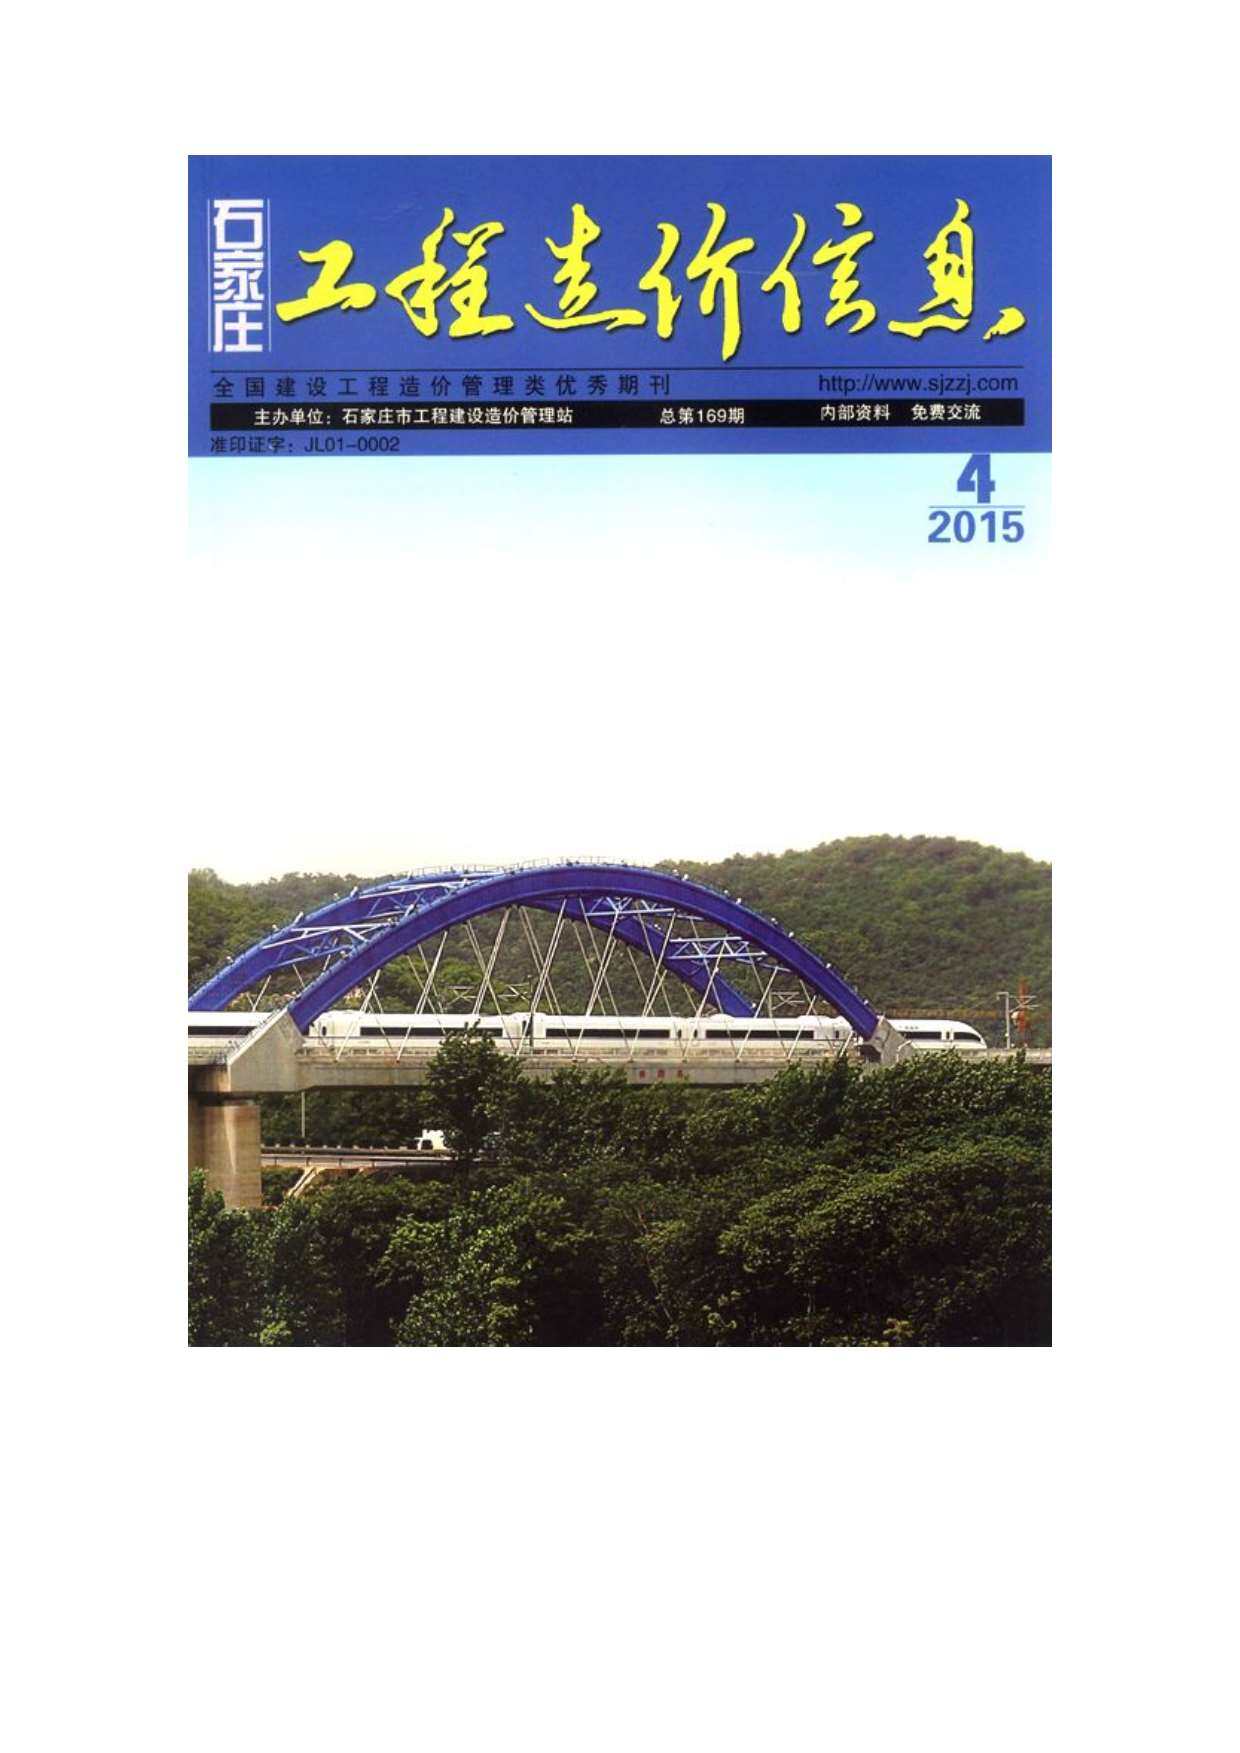 石家庄市2015年4月工程造价信息期刊